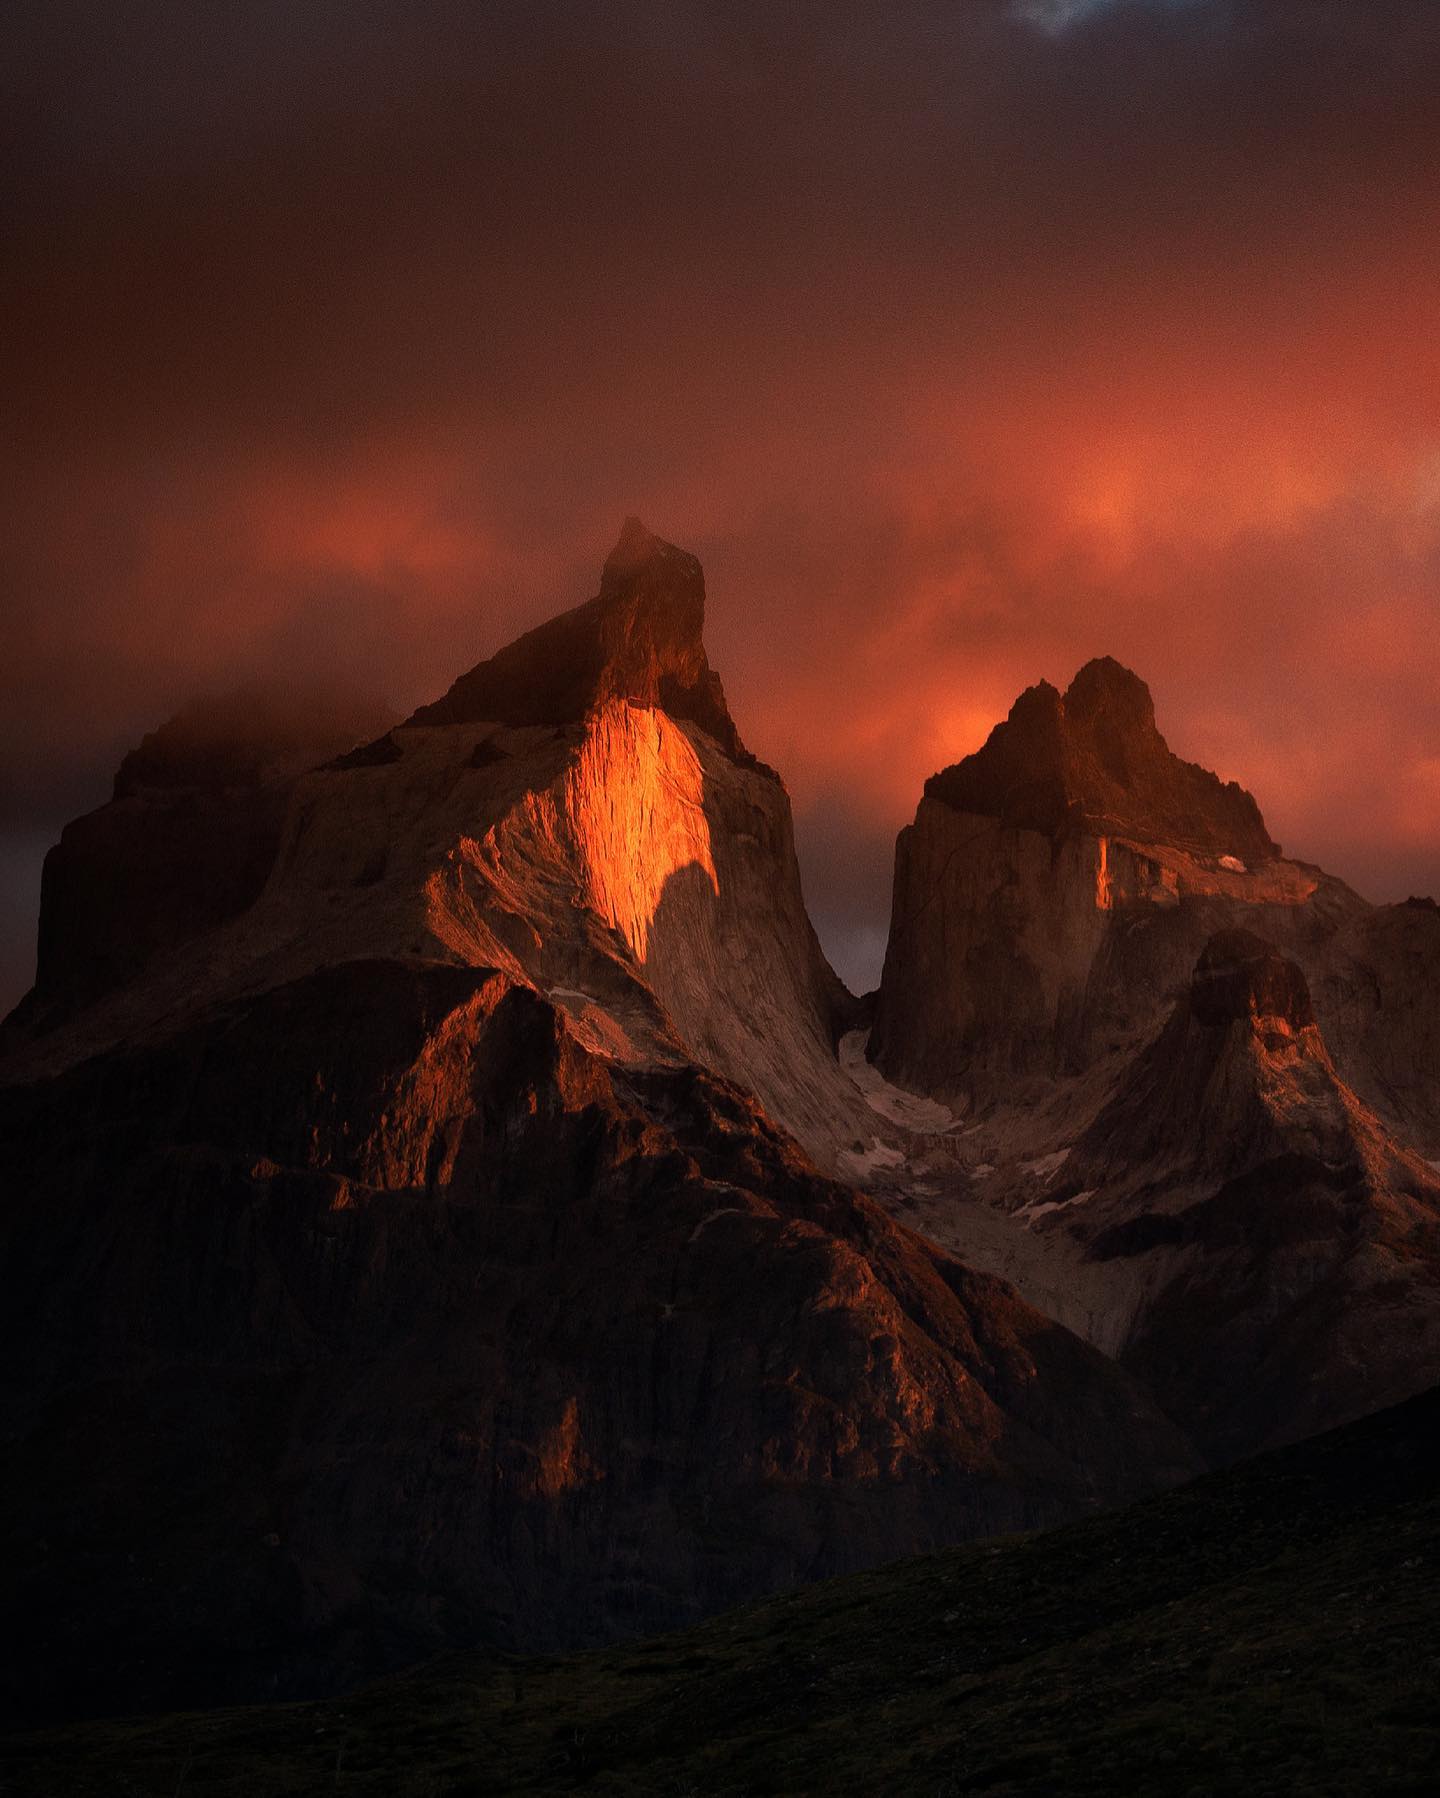 Primer concurso fotográfico de Las Torres Patagonia cierra con más de 500 participantes